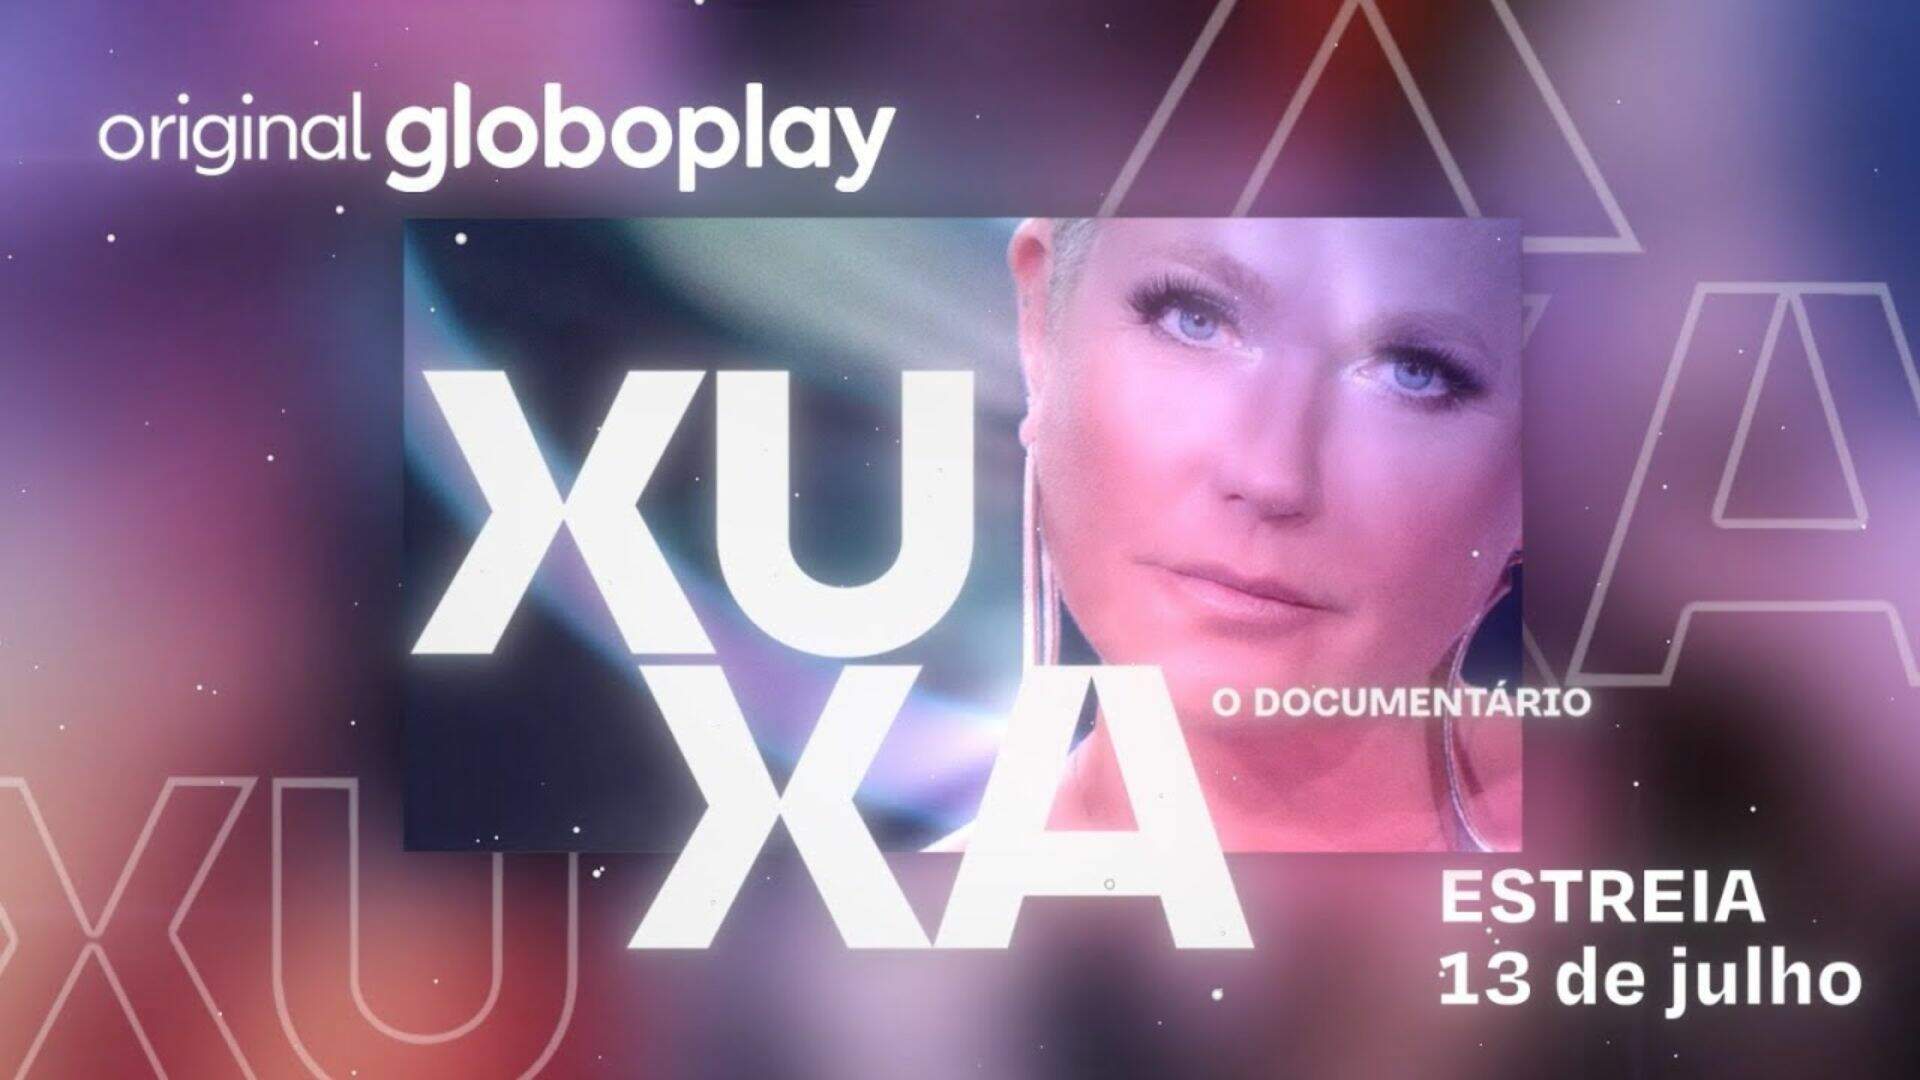 Xuxa, O Documentário: Primeiro episódio exibe momento ‘assustador’ na carreira da apresentadora - Metropolitana FM